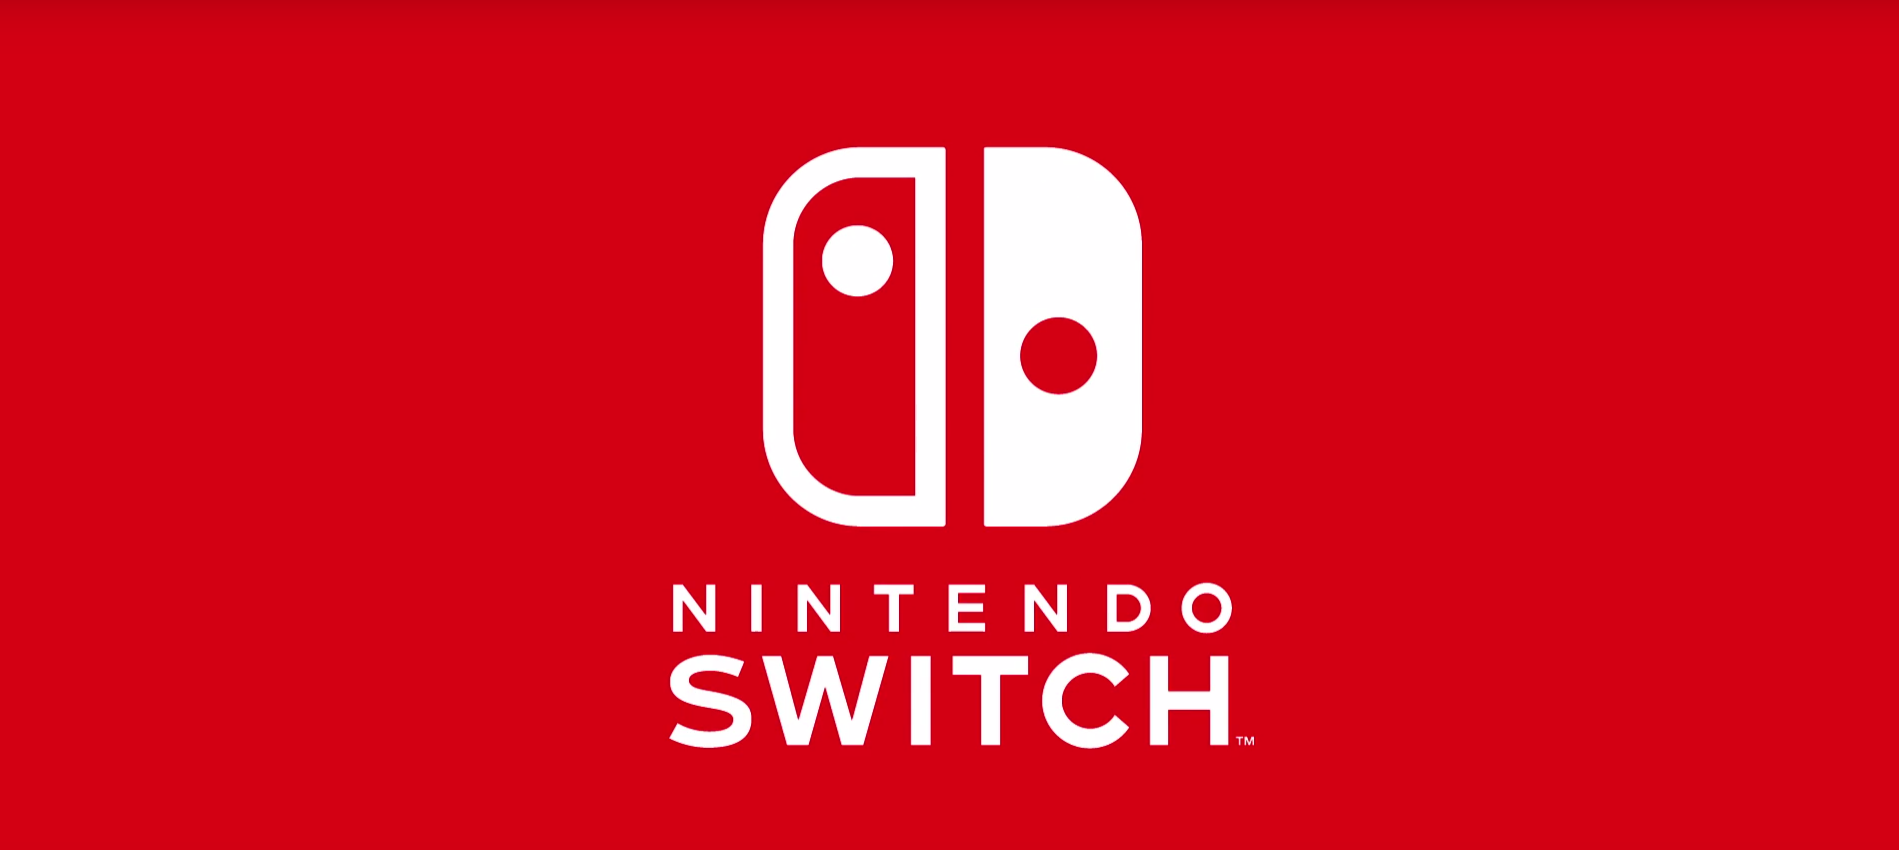 Nintendo Switch is de nieuwe Nintendo console!